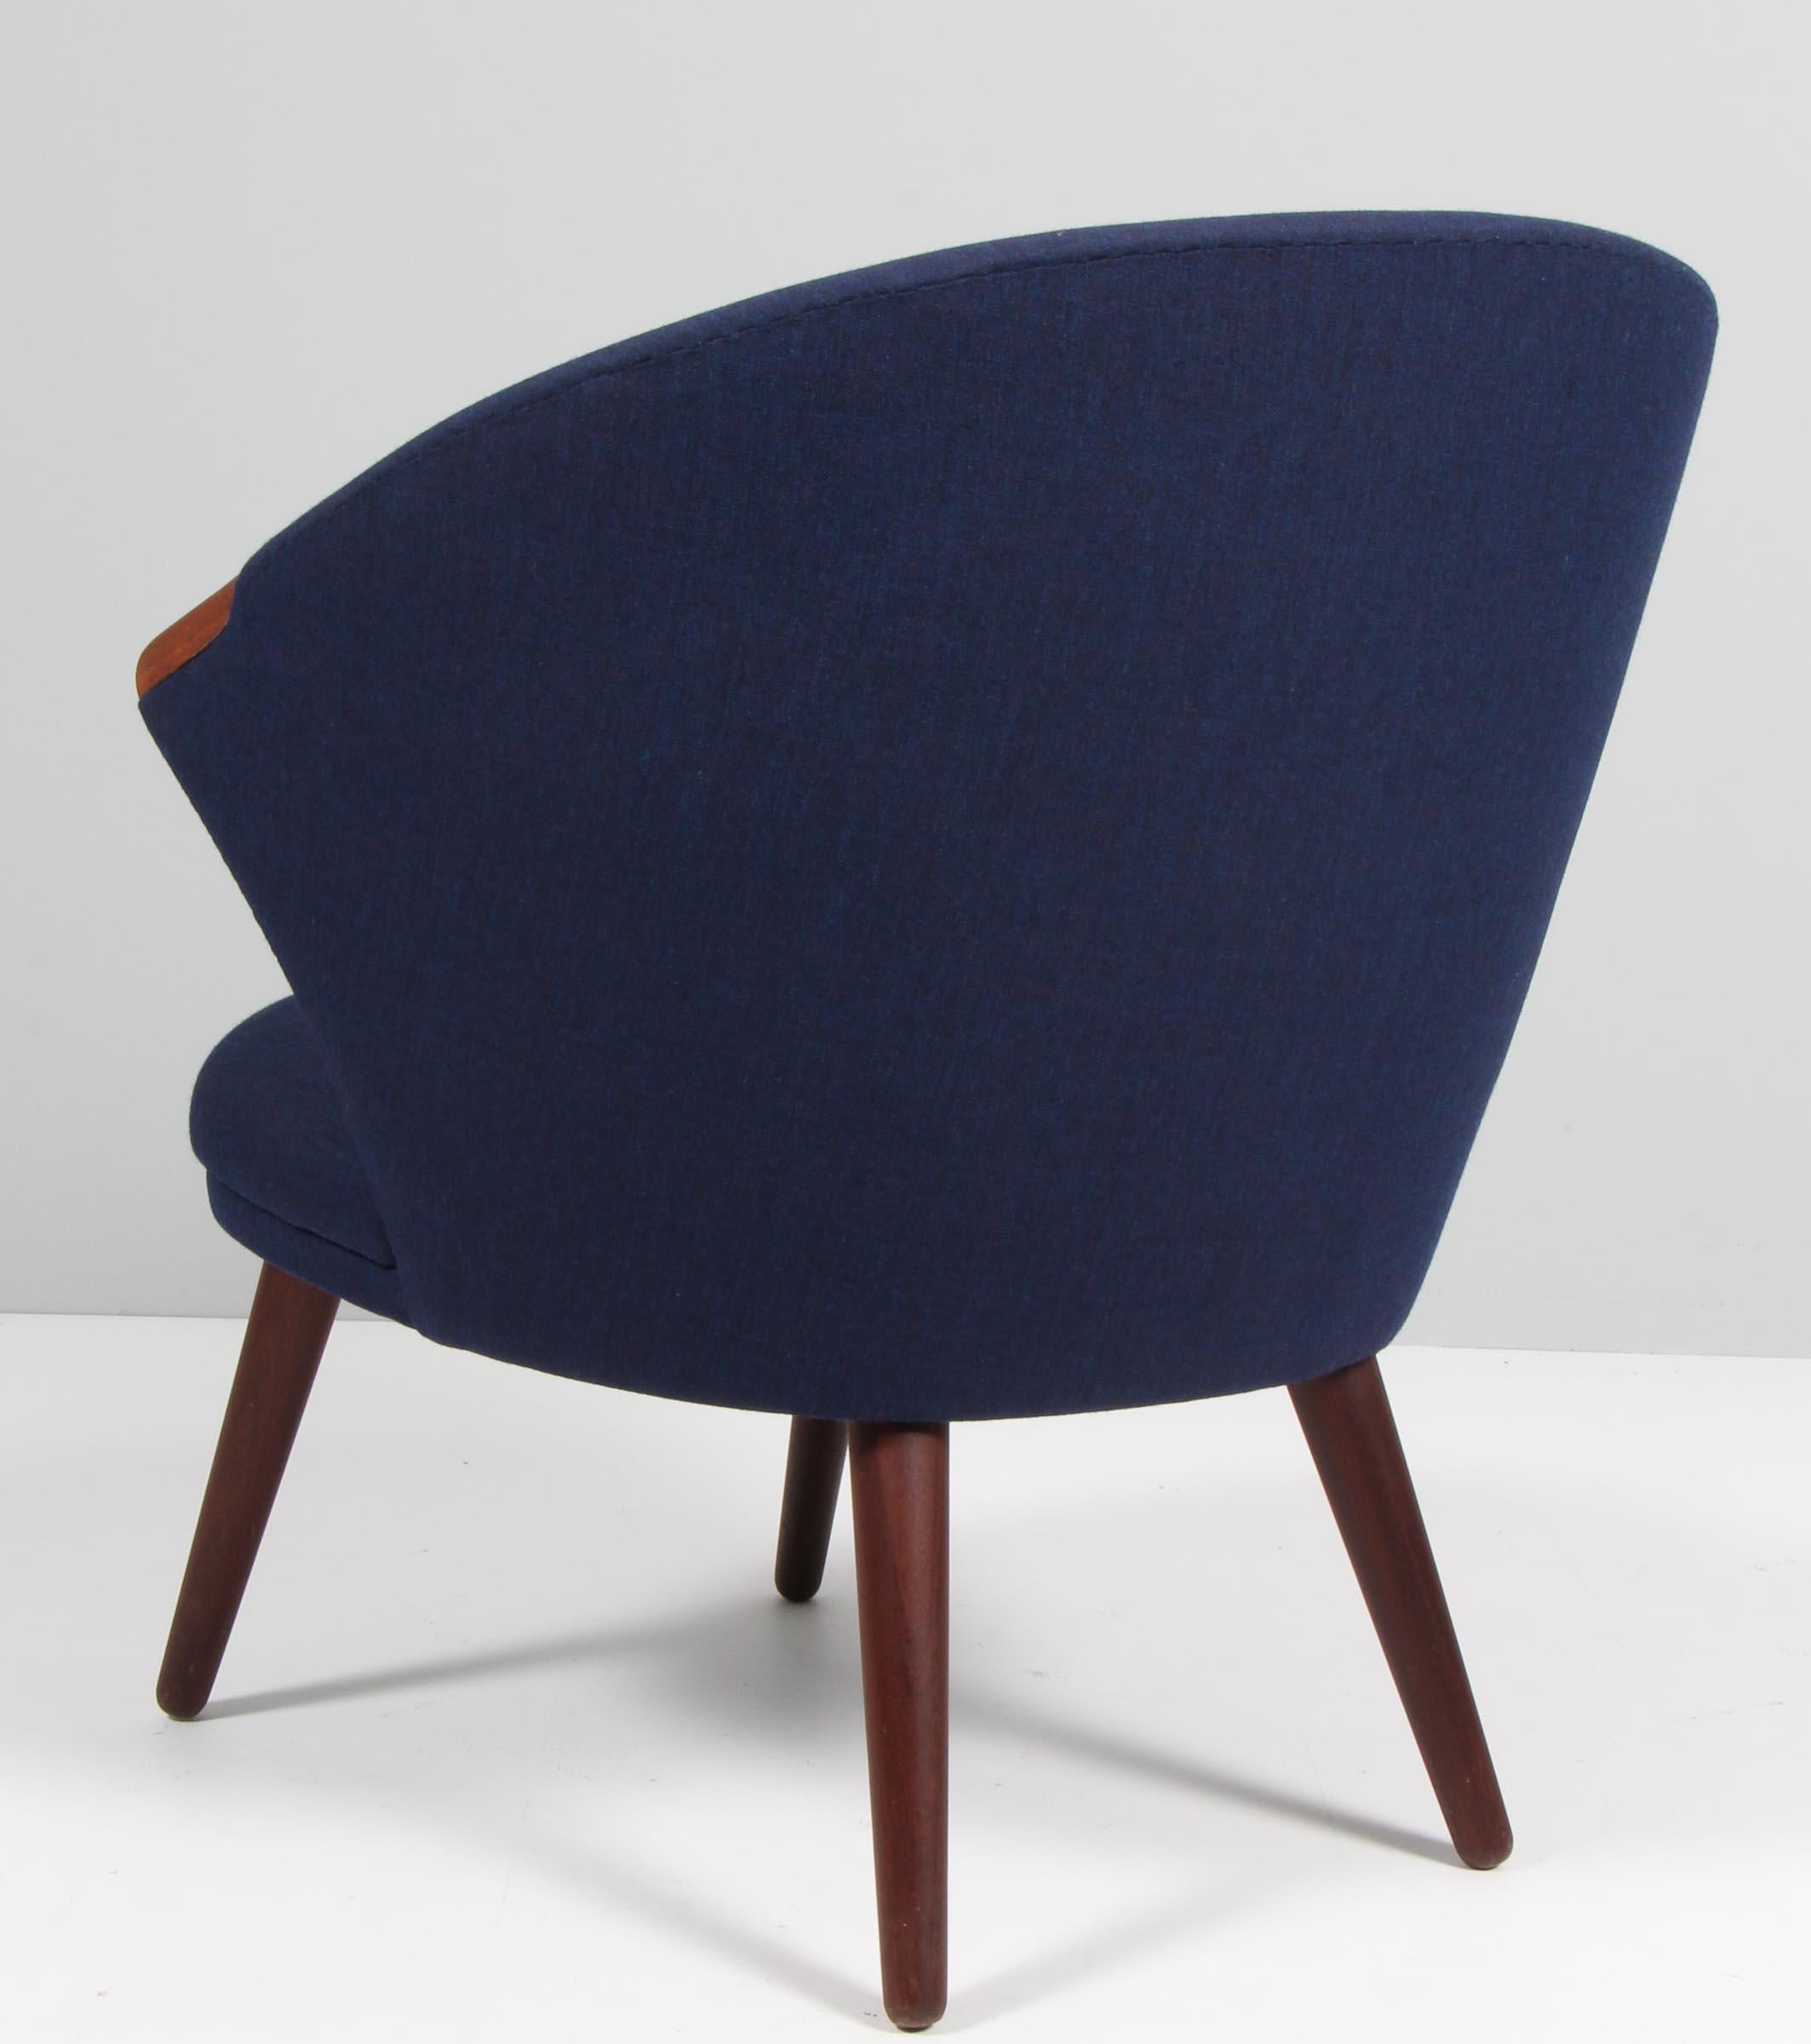 Teak Danish Mid-Century Lounge Chair, Designed by Bent Møller Jepsen, 1960s